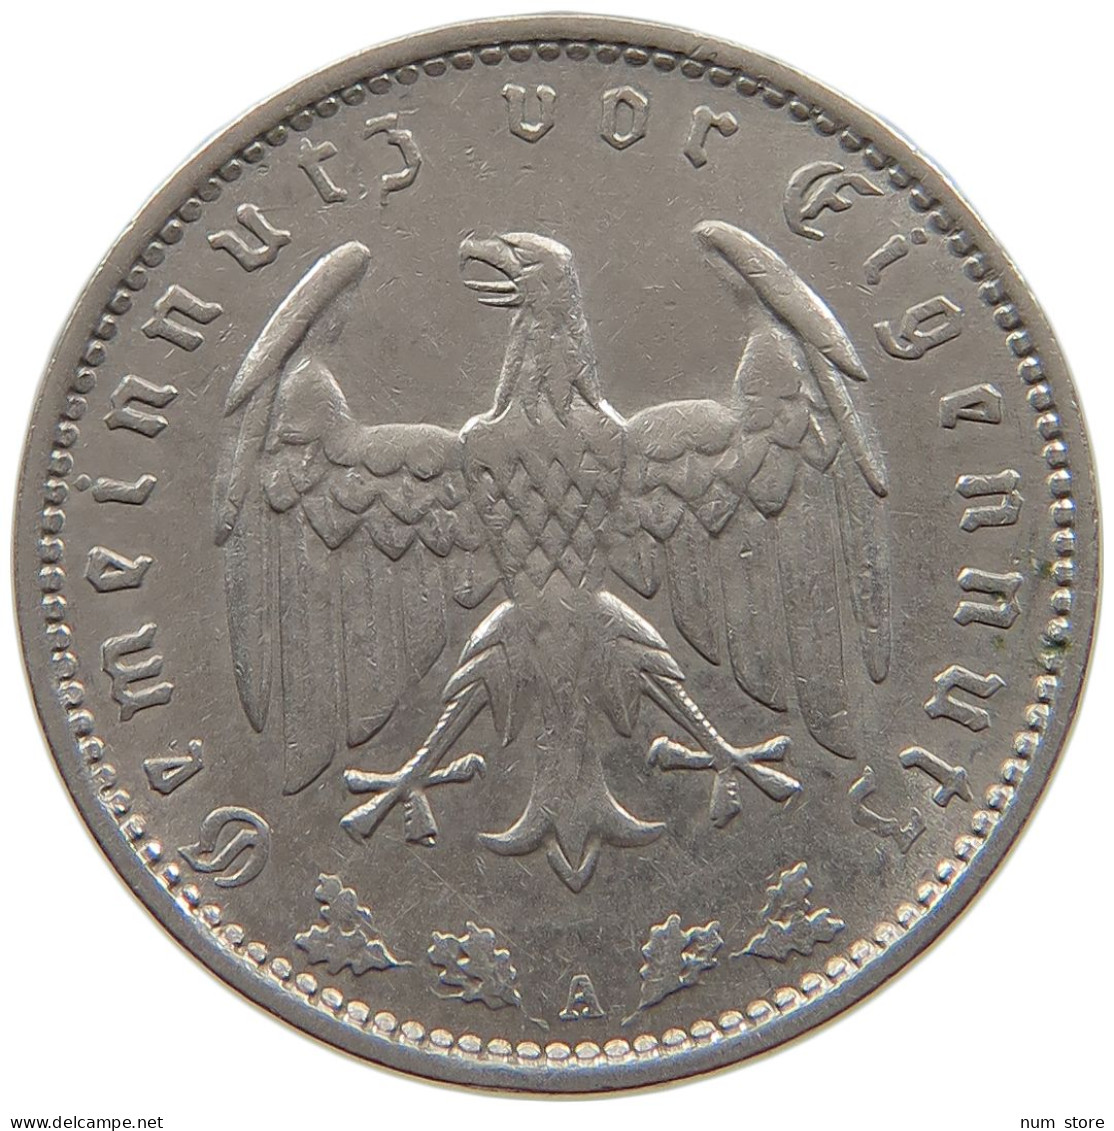 DRITTES REICH MARK 1935 A J.354 #a086 1059 - 1 Reichsmark